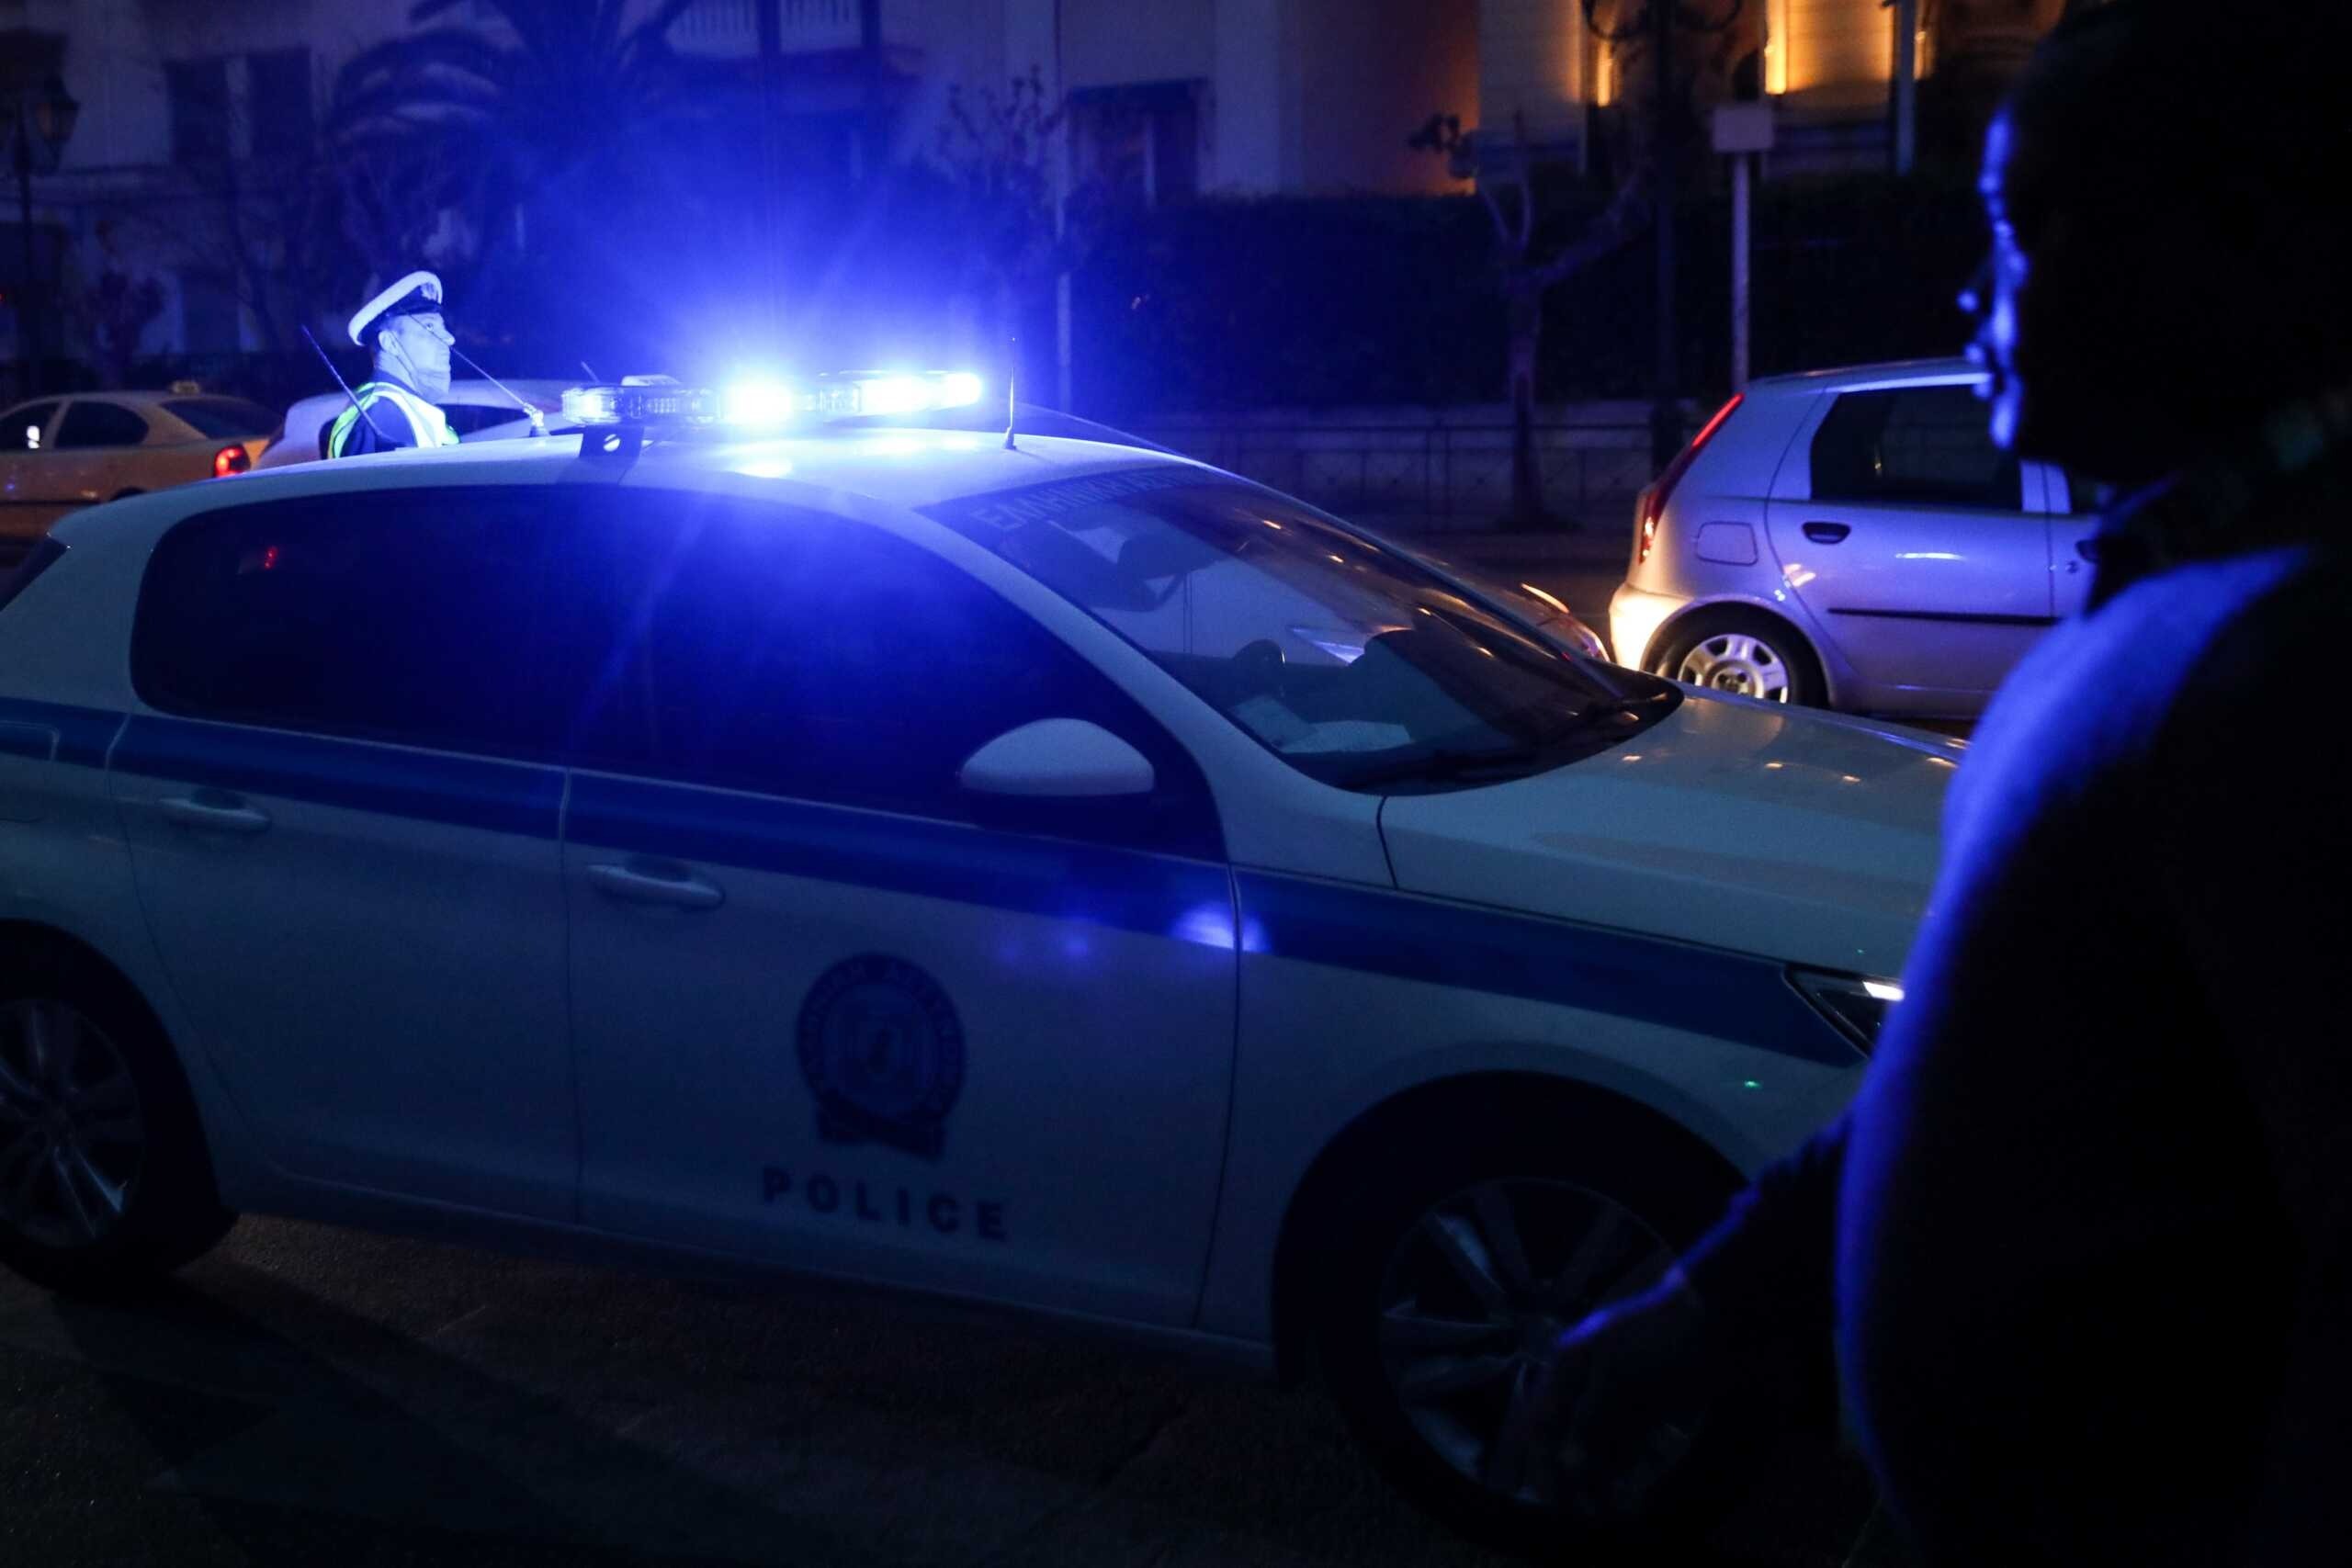 Σύλληψη 20χρονου για απόπειρα ανθρωποκτονίας τον Φεβρουάριο στην Αθήνα – Αναζητούνται άλλοι 2